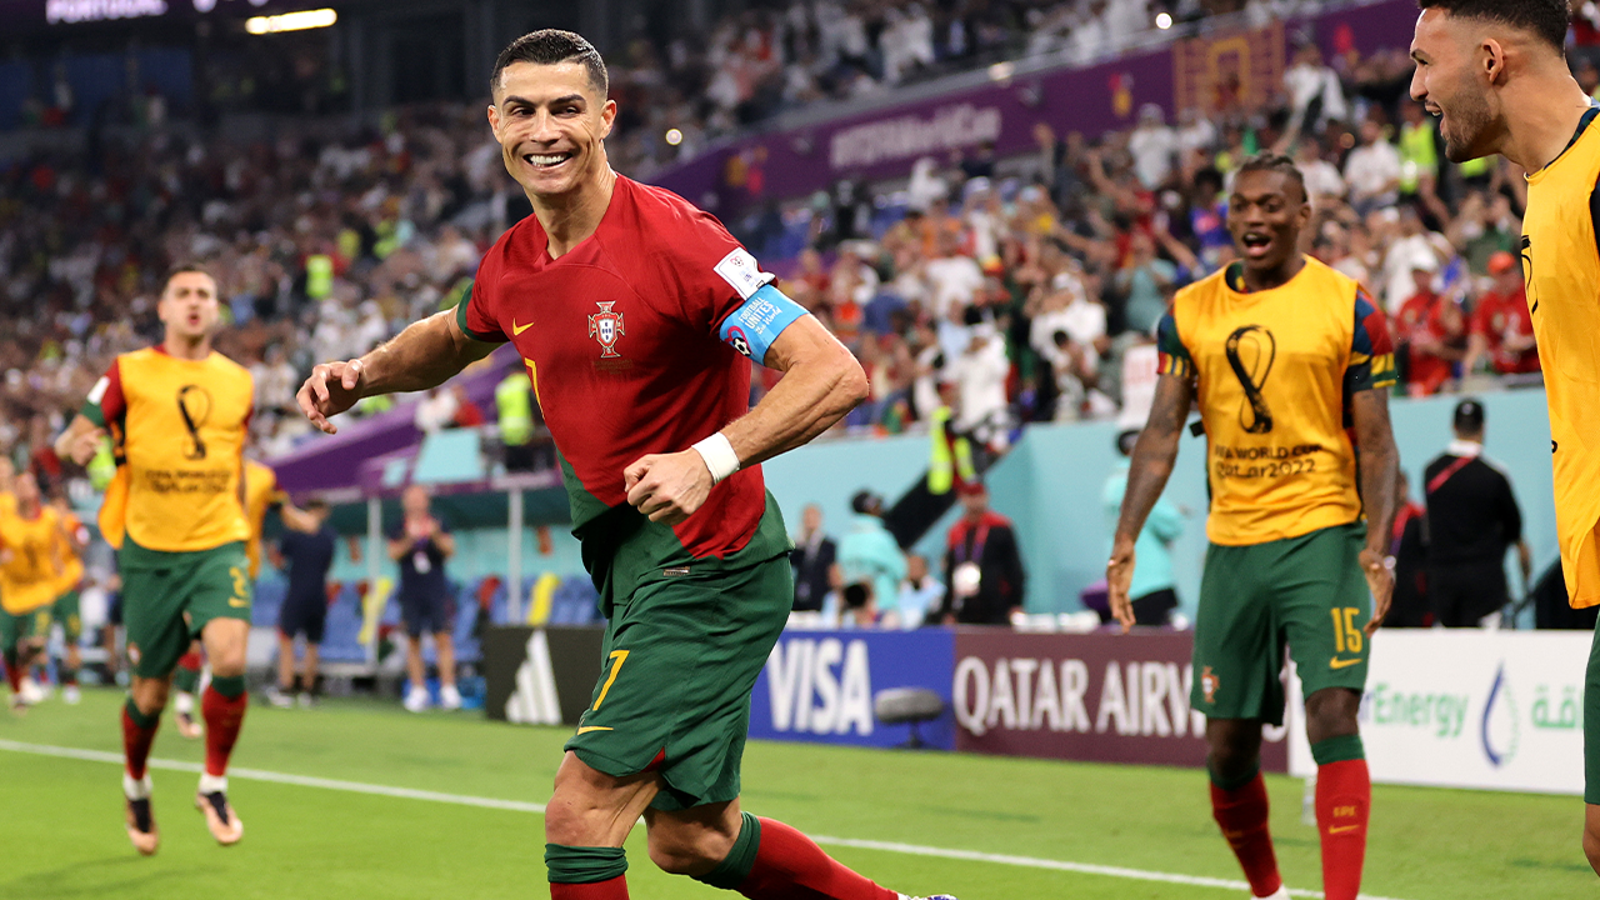 Portugal's Cristiano Ronaldo scores goal vs. Ghana in 62'